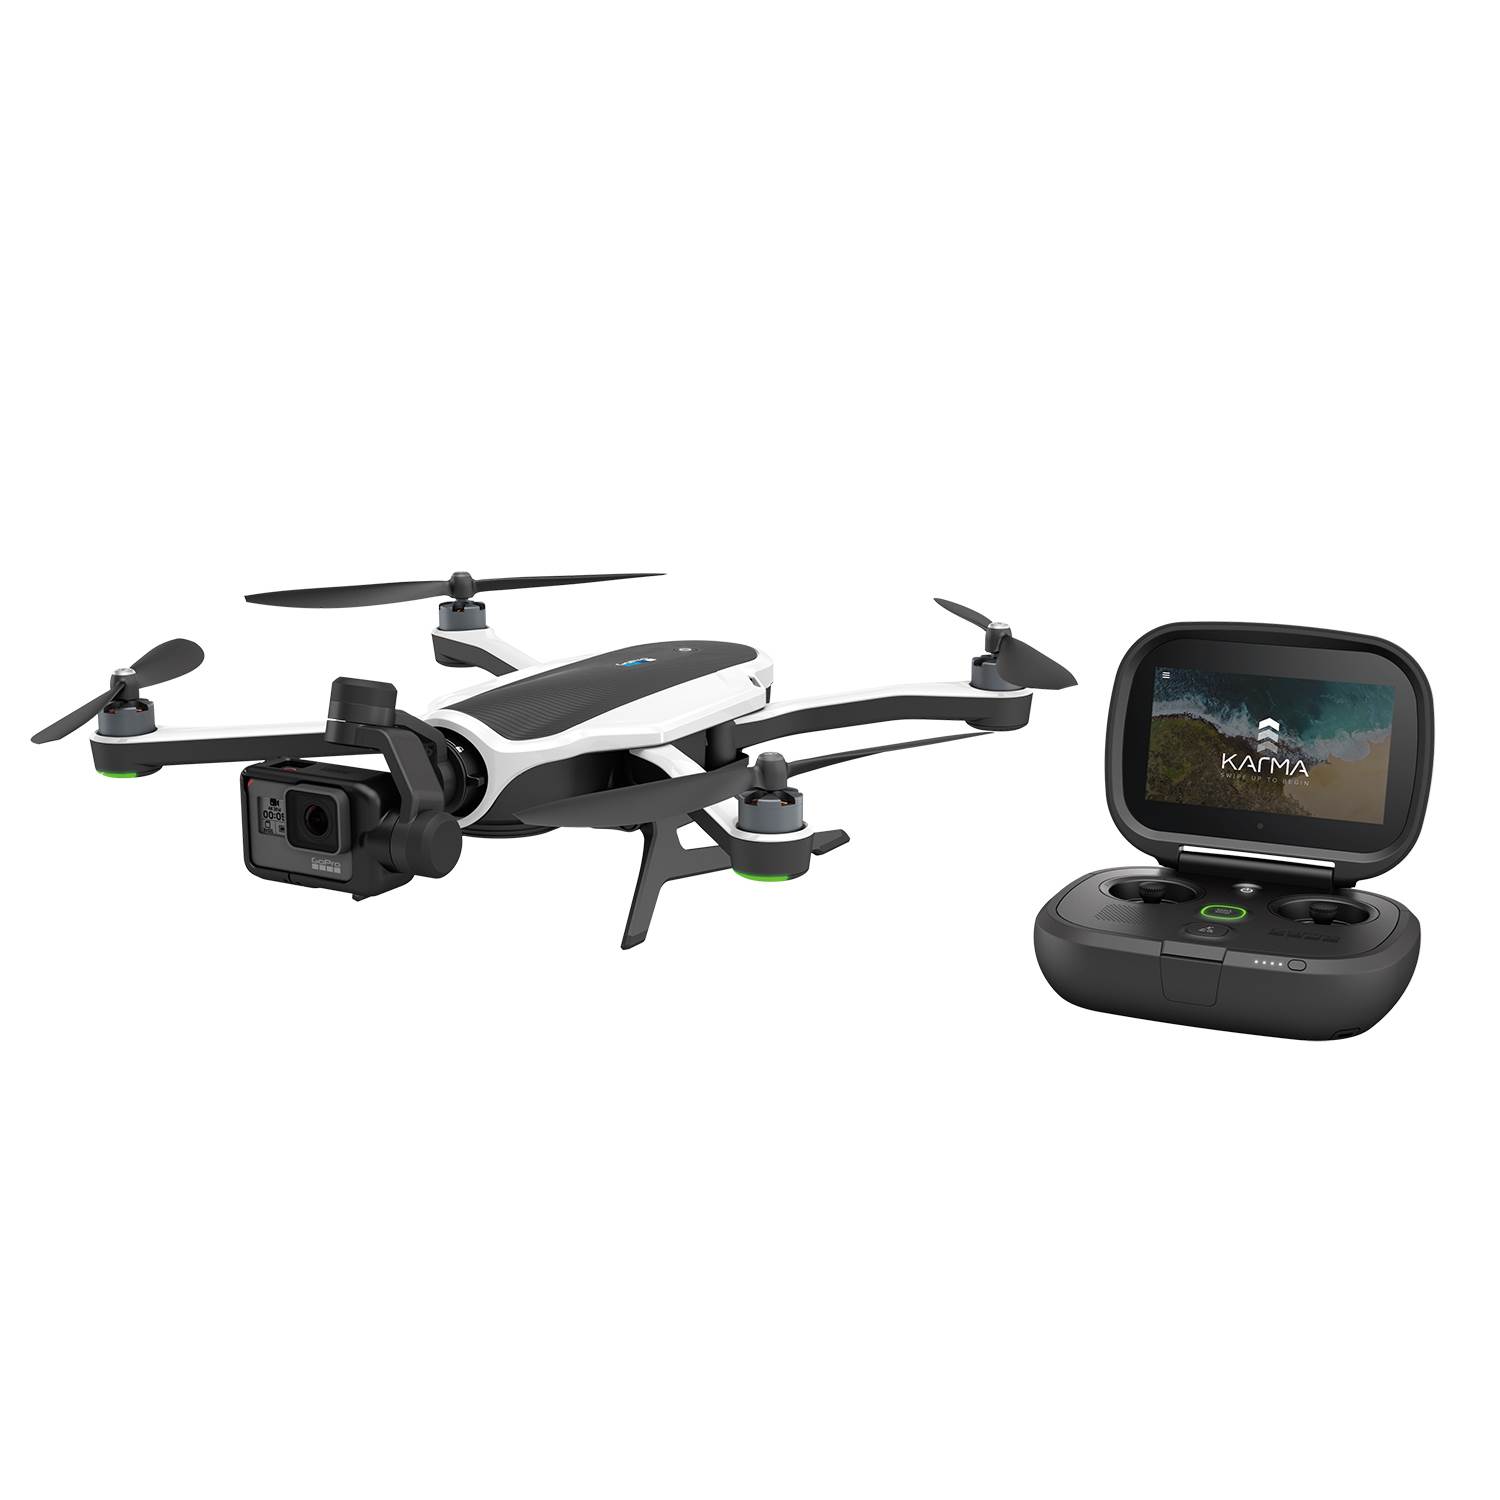 Katlanabilir GoPro Karma drone modeli duyuruldu